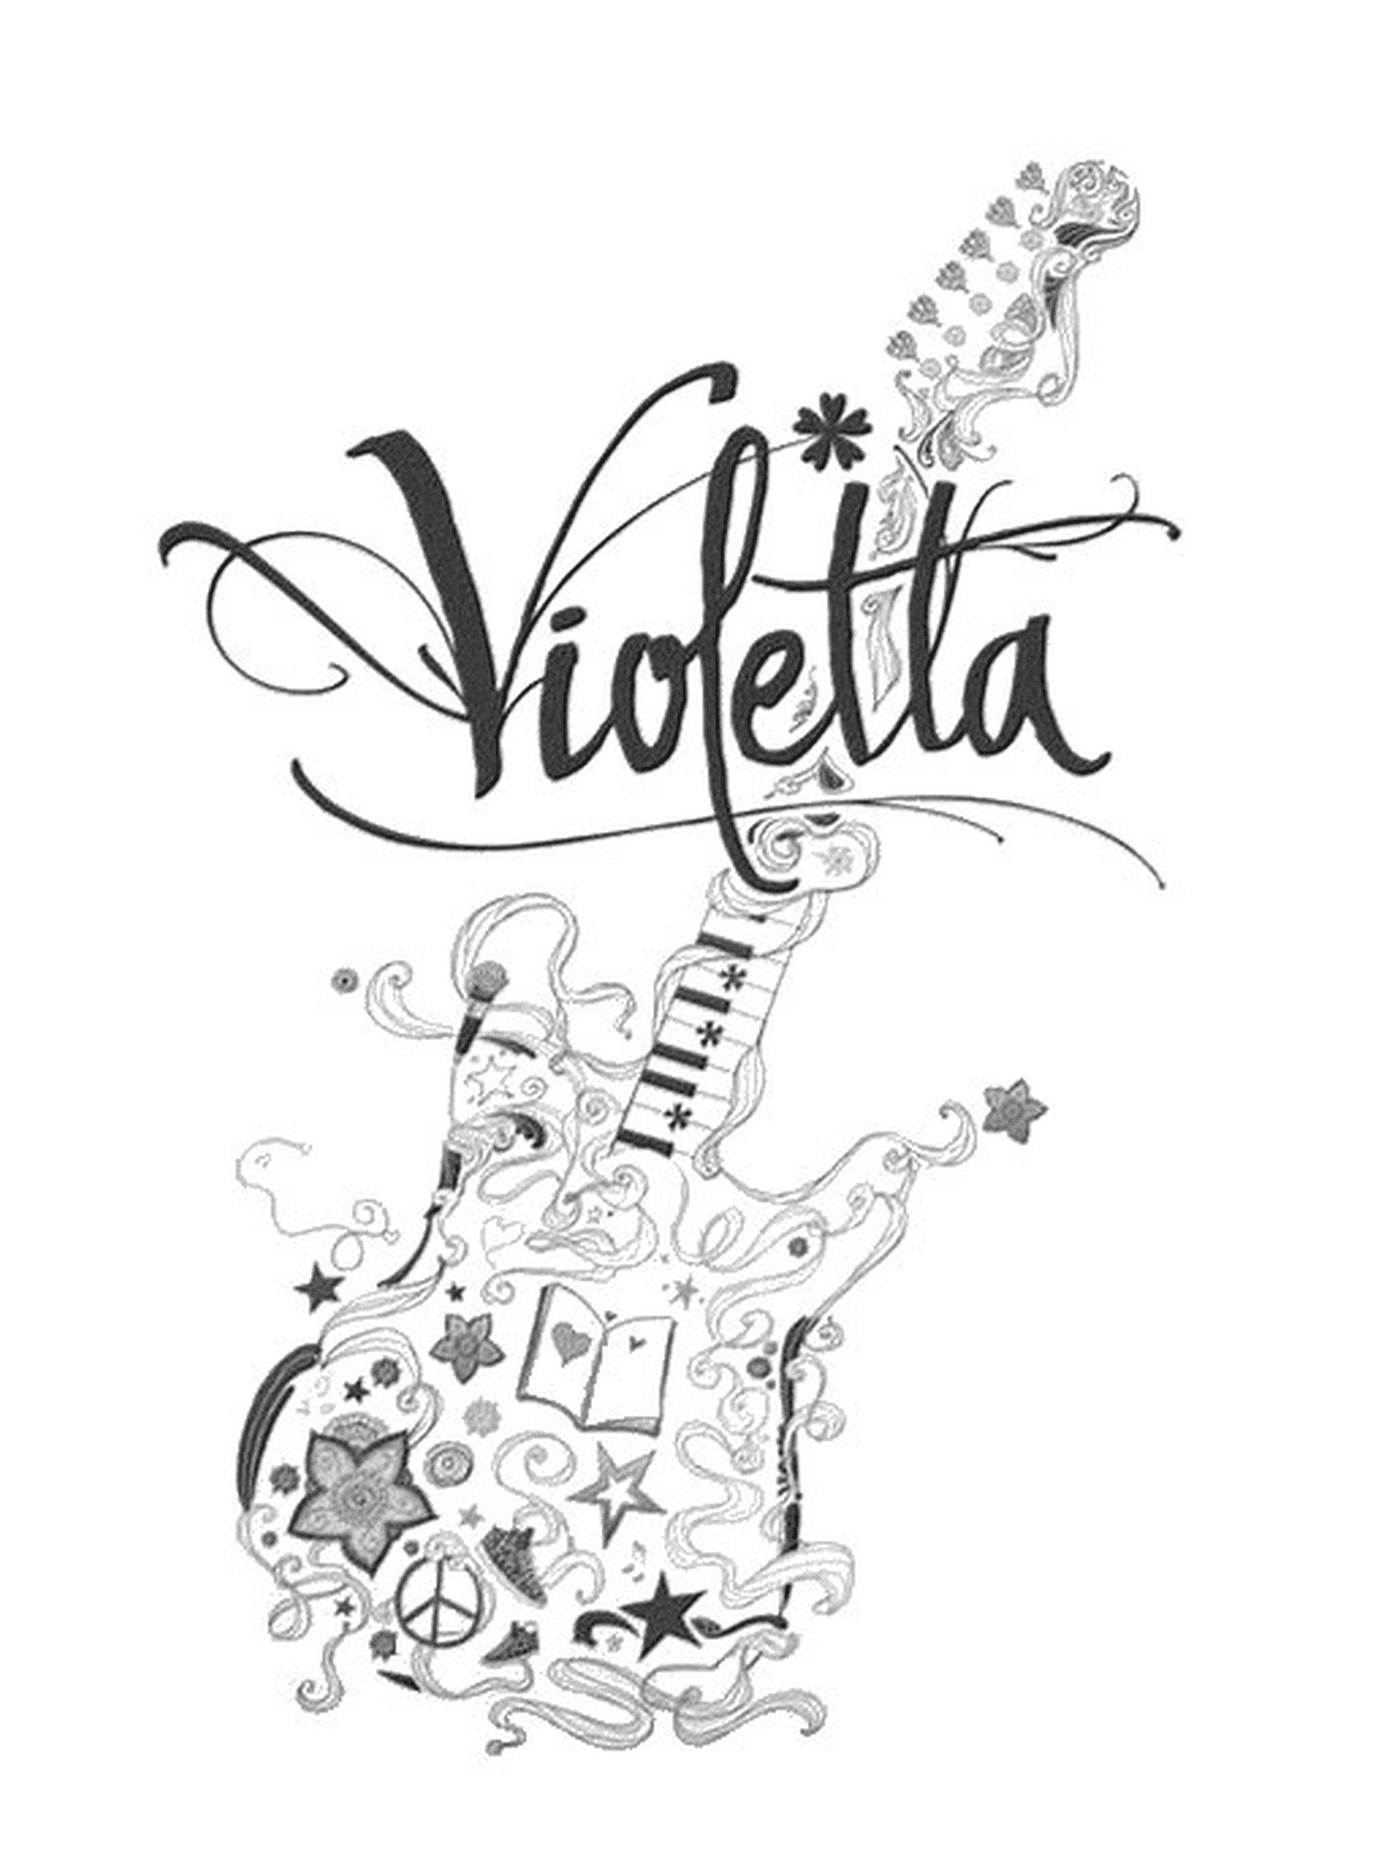  Chitarra Violetta, nome Violetta 